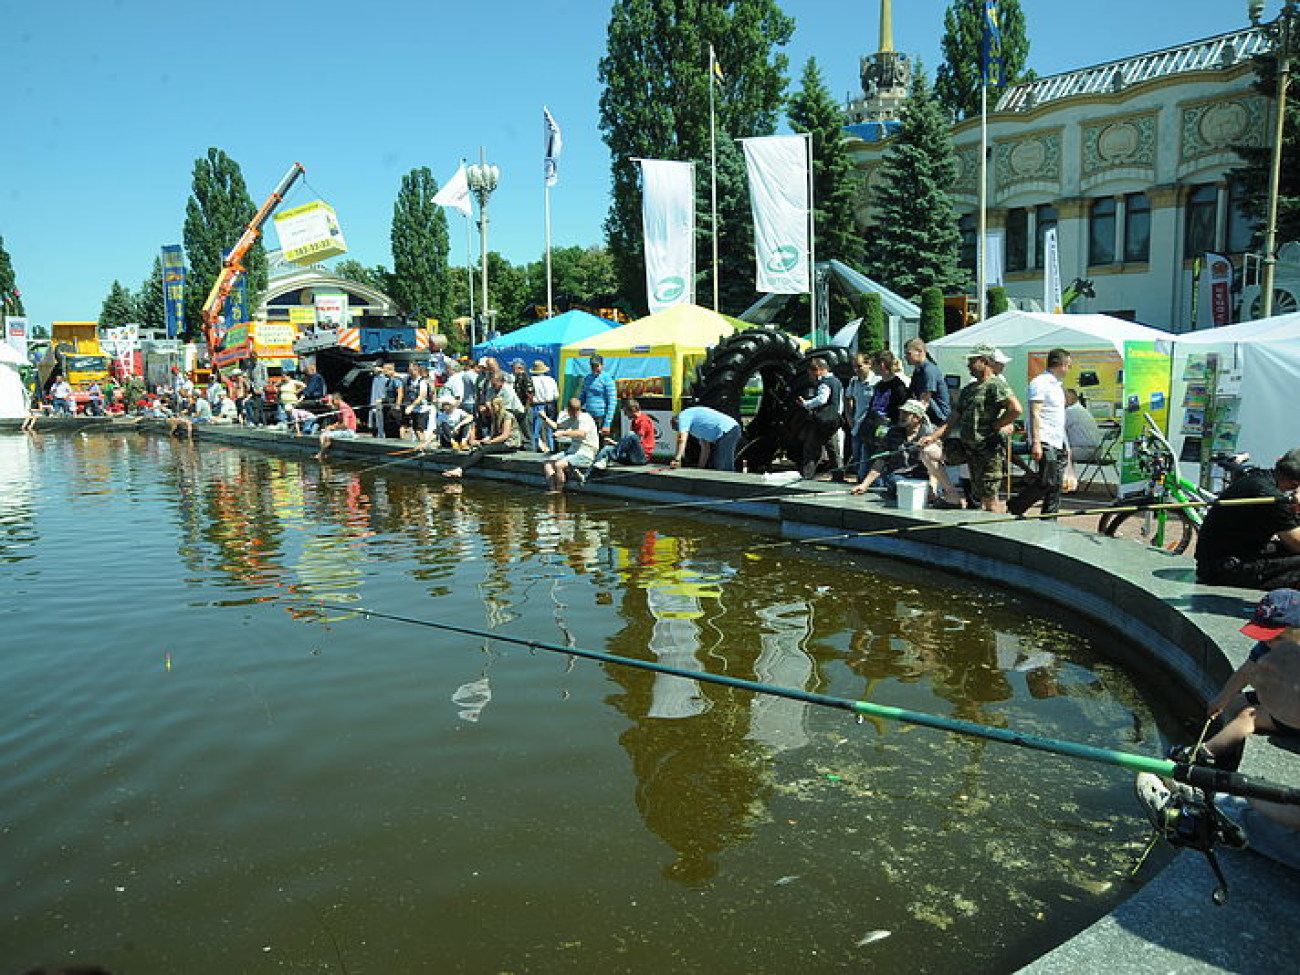 В Киеве проходит самая большая агропромышленная выставка Украины и Восточной Европы, 5 июня 2015 г.